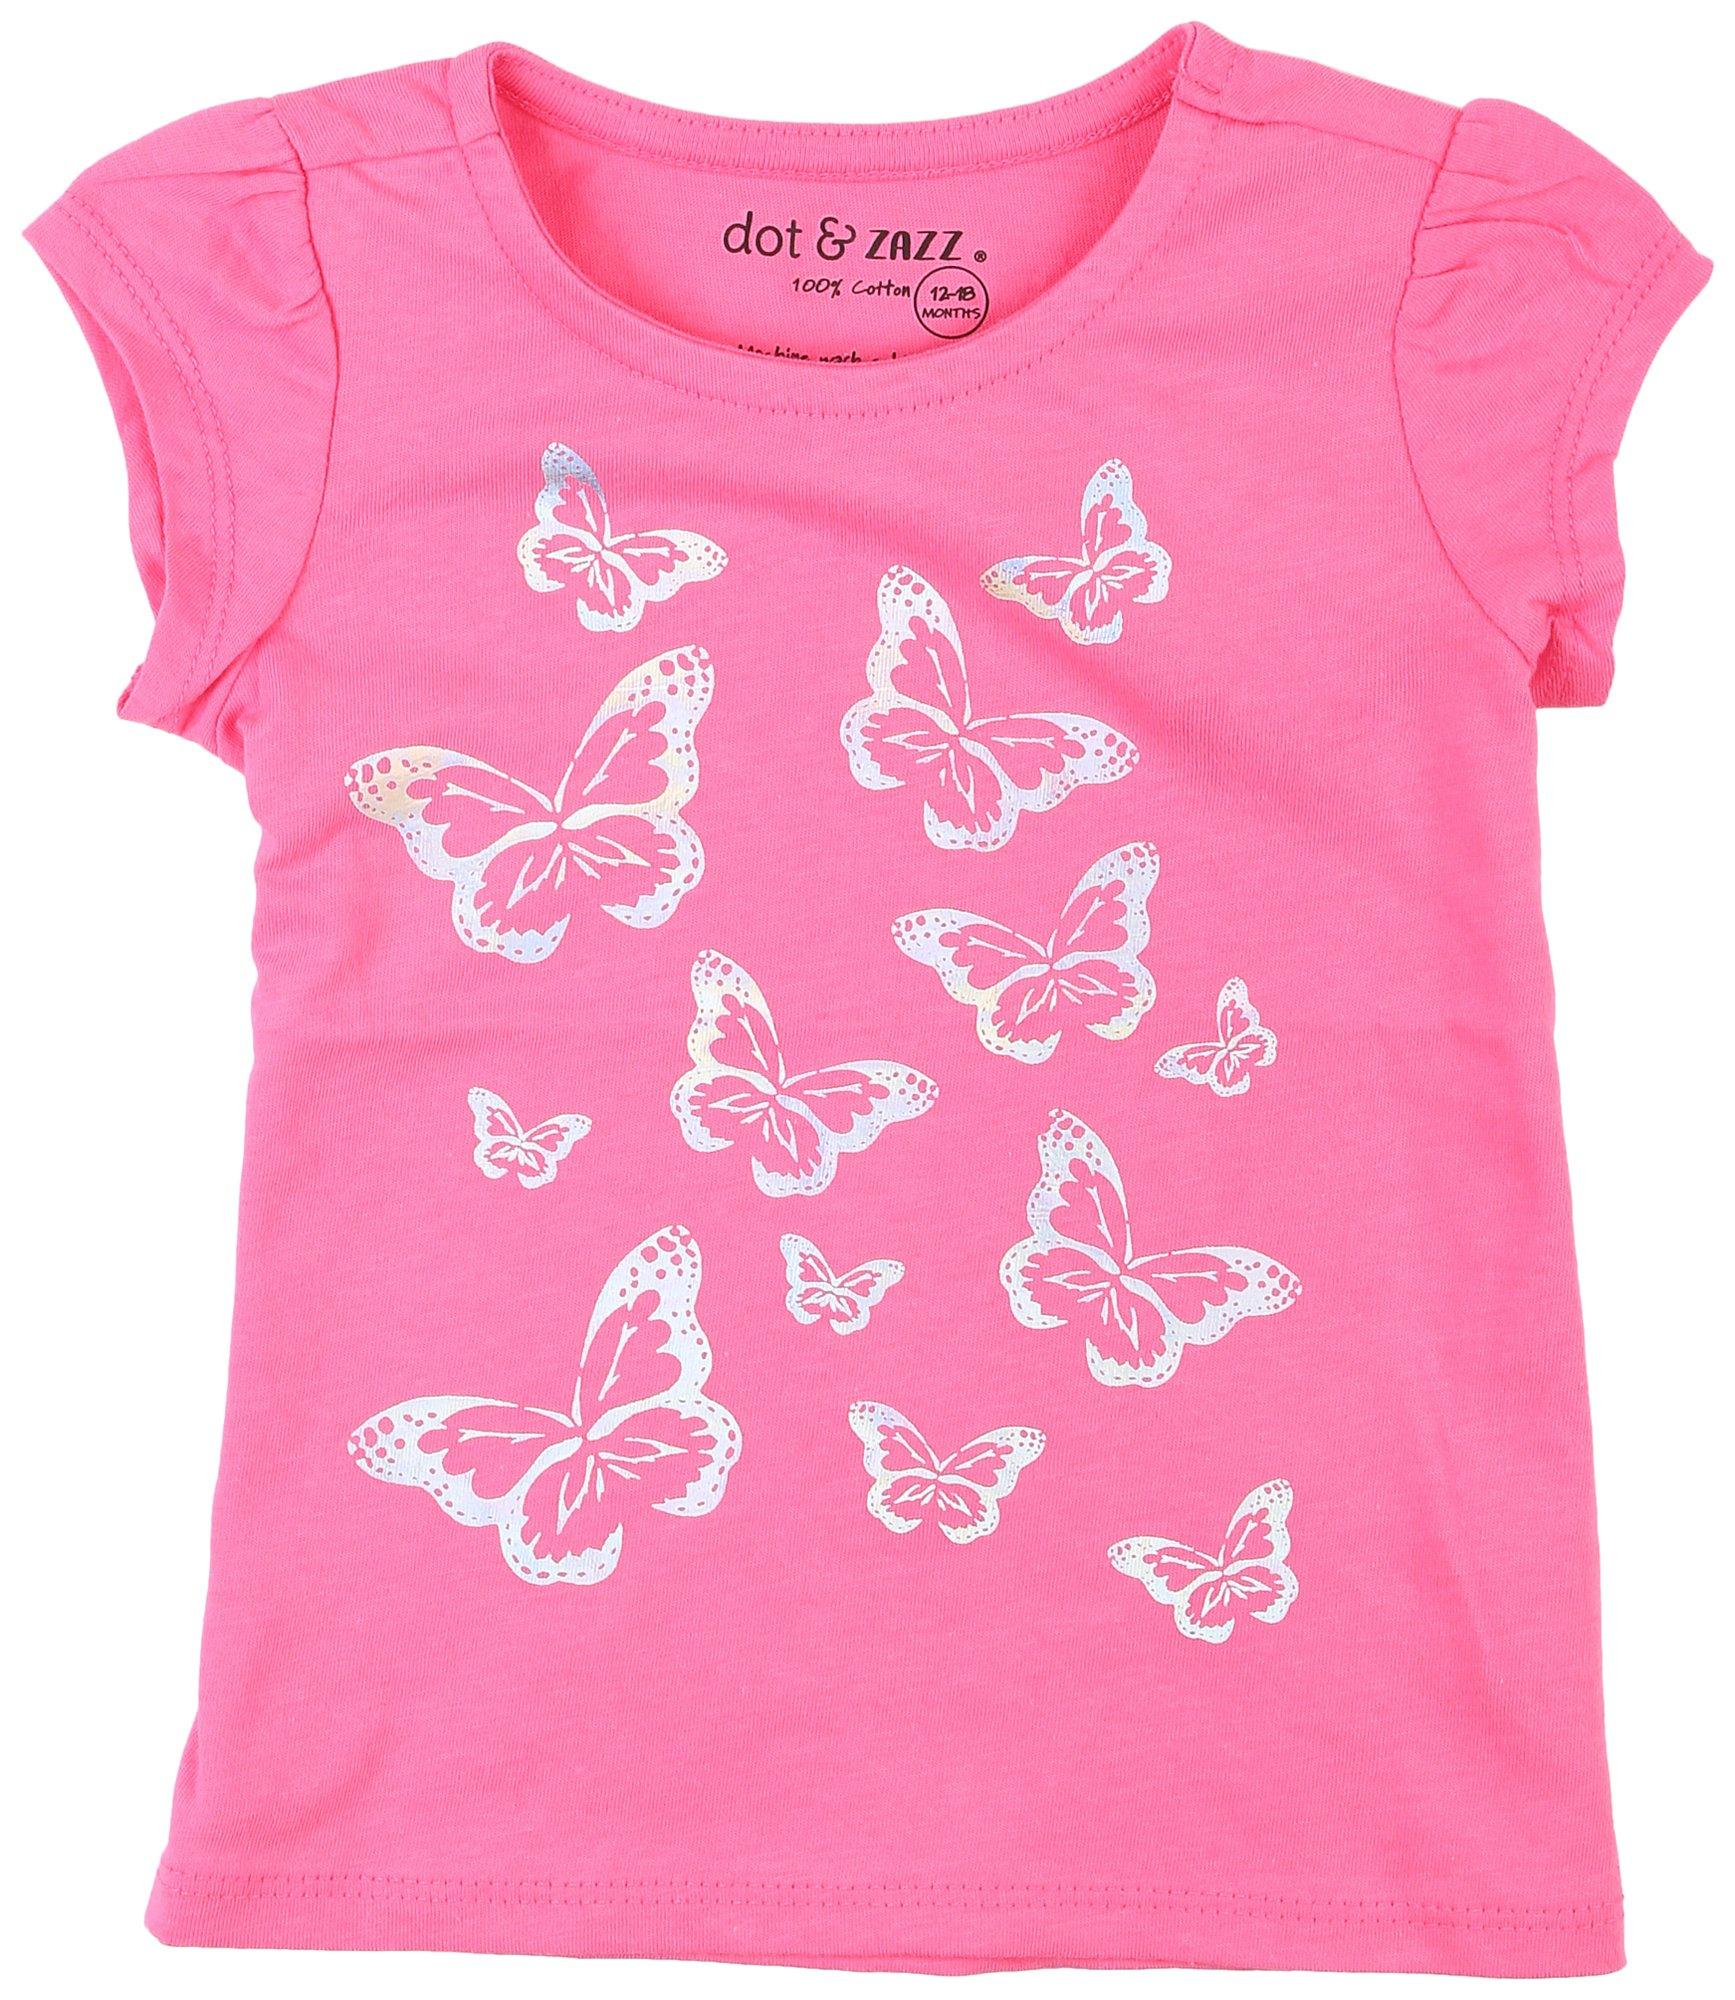 DOT & ZAZZ Toddler Girls Butterflies Short Sleeve Top